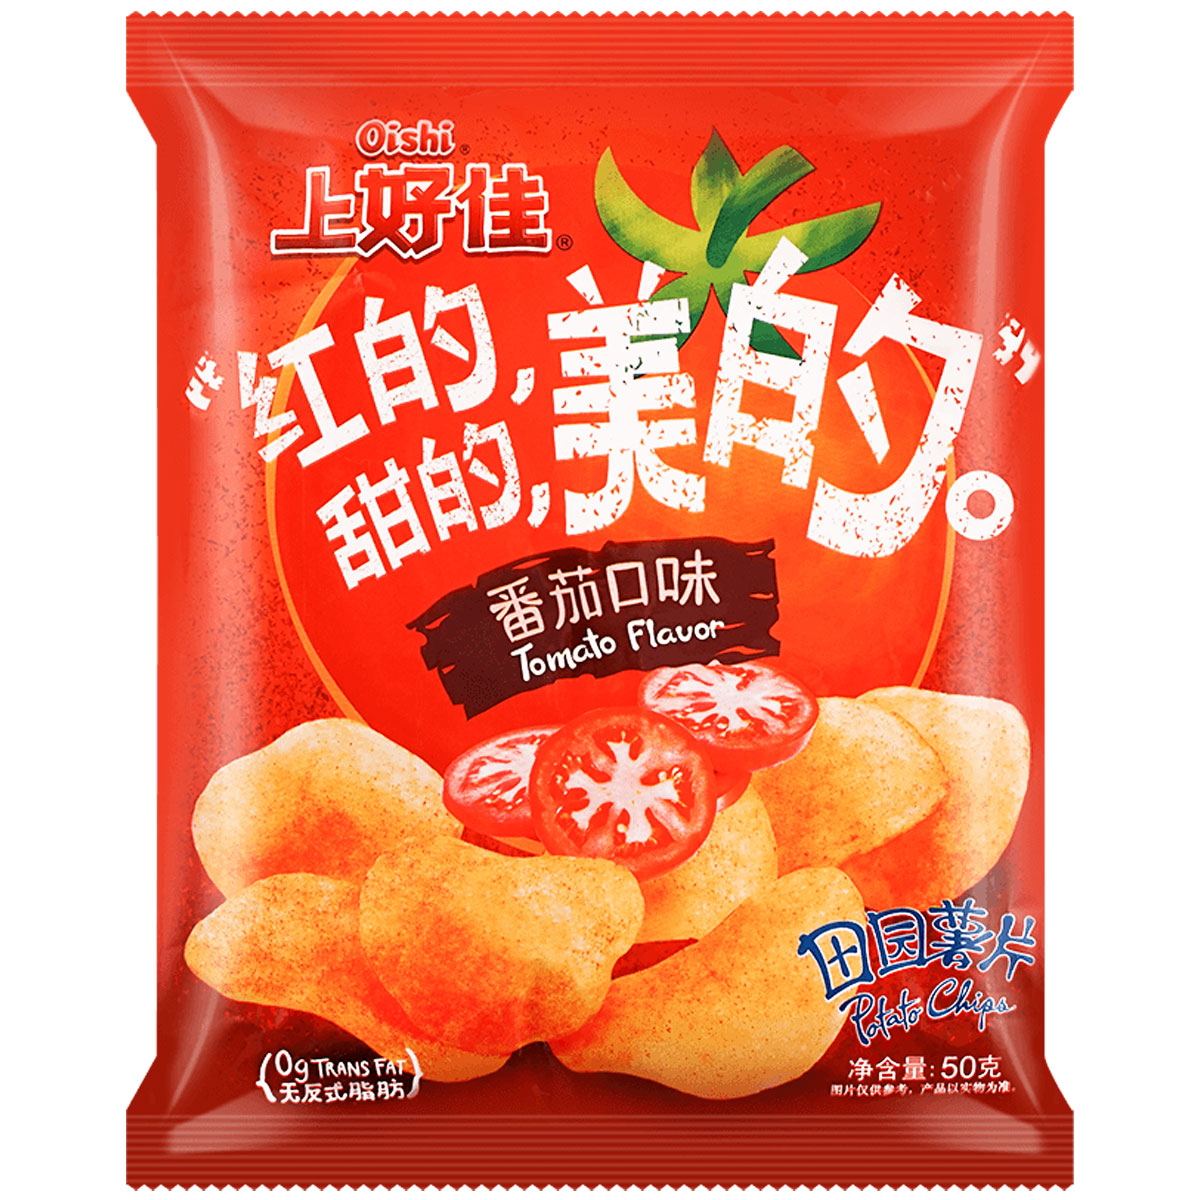 Oishi Potato Chips Tomato Flavor - 50g